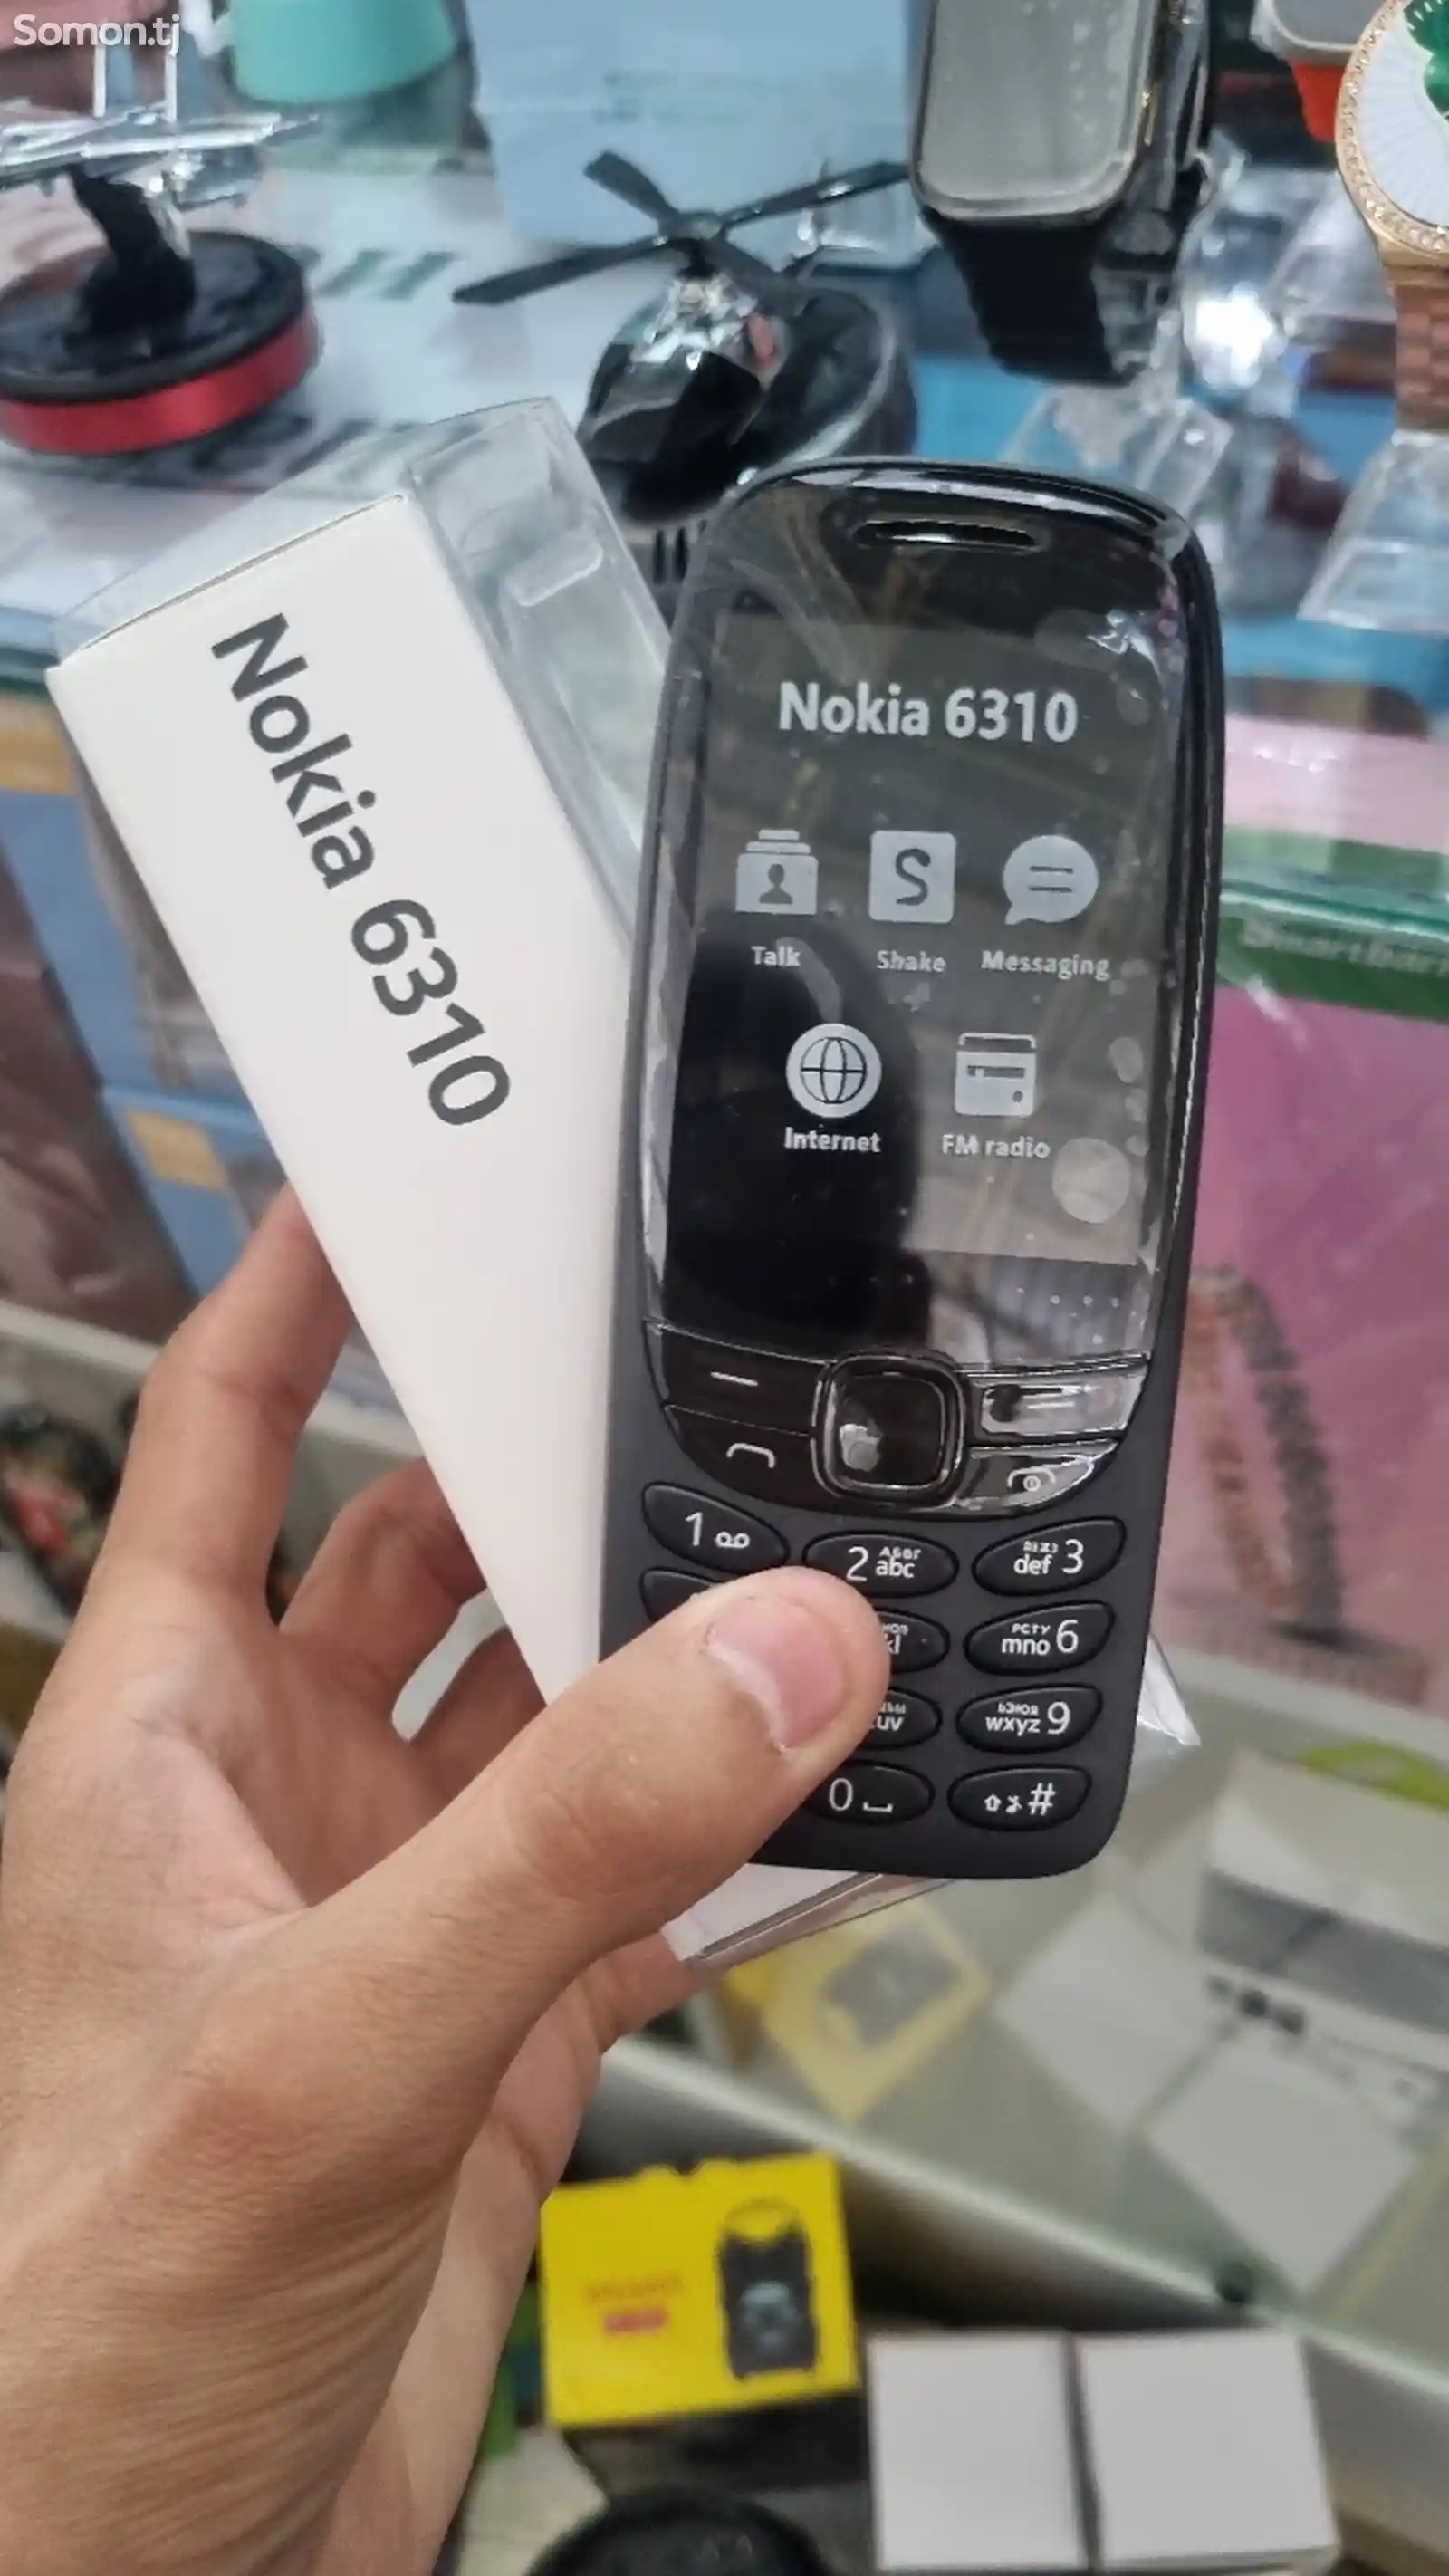 Nokia 6310 duos-1